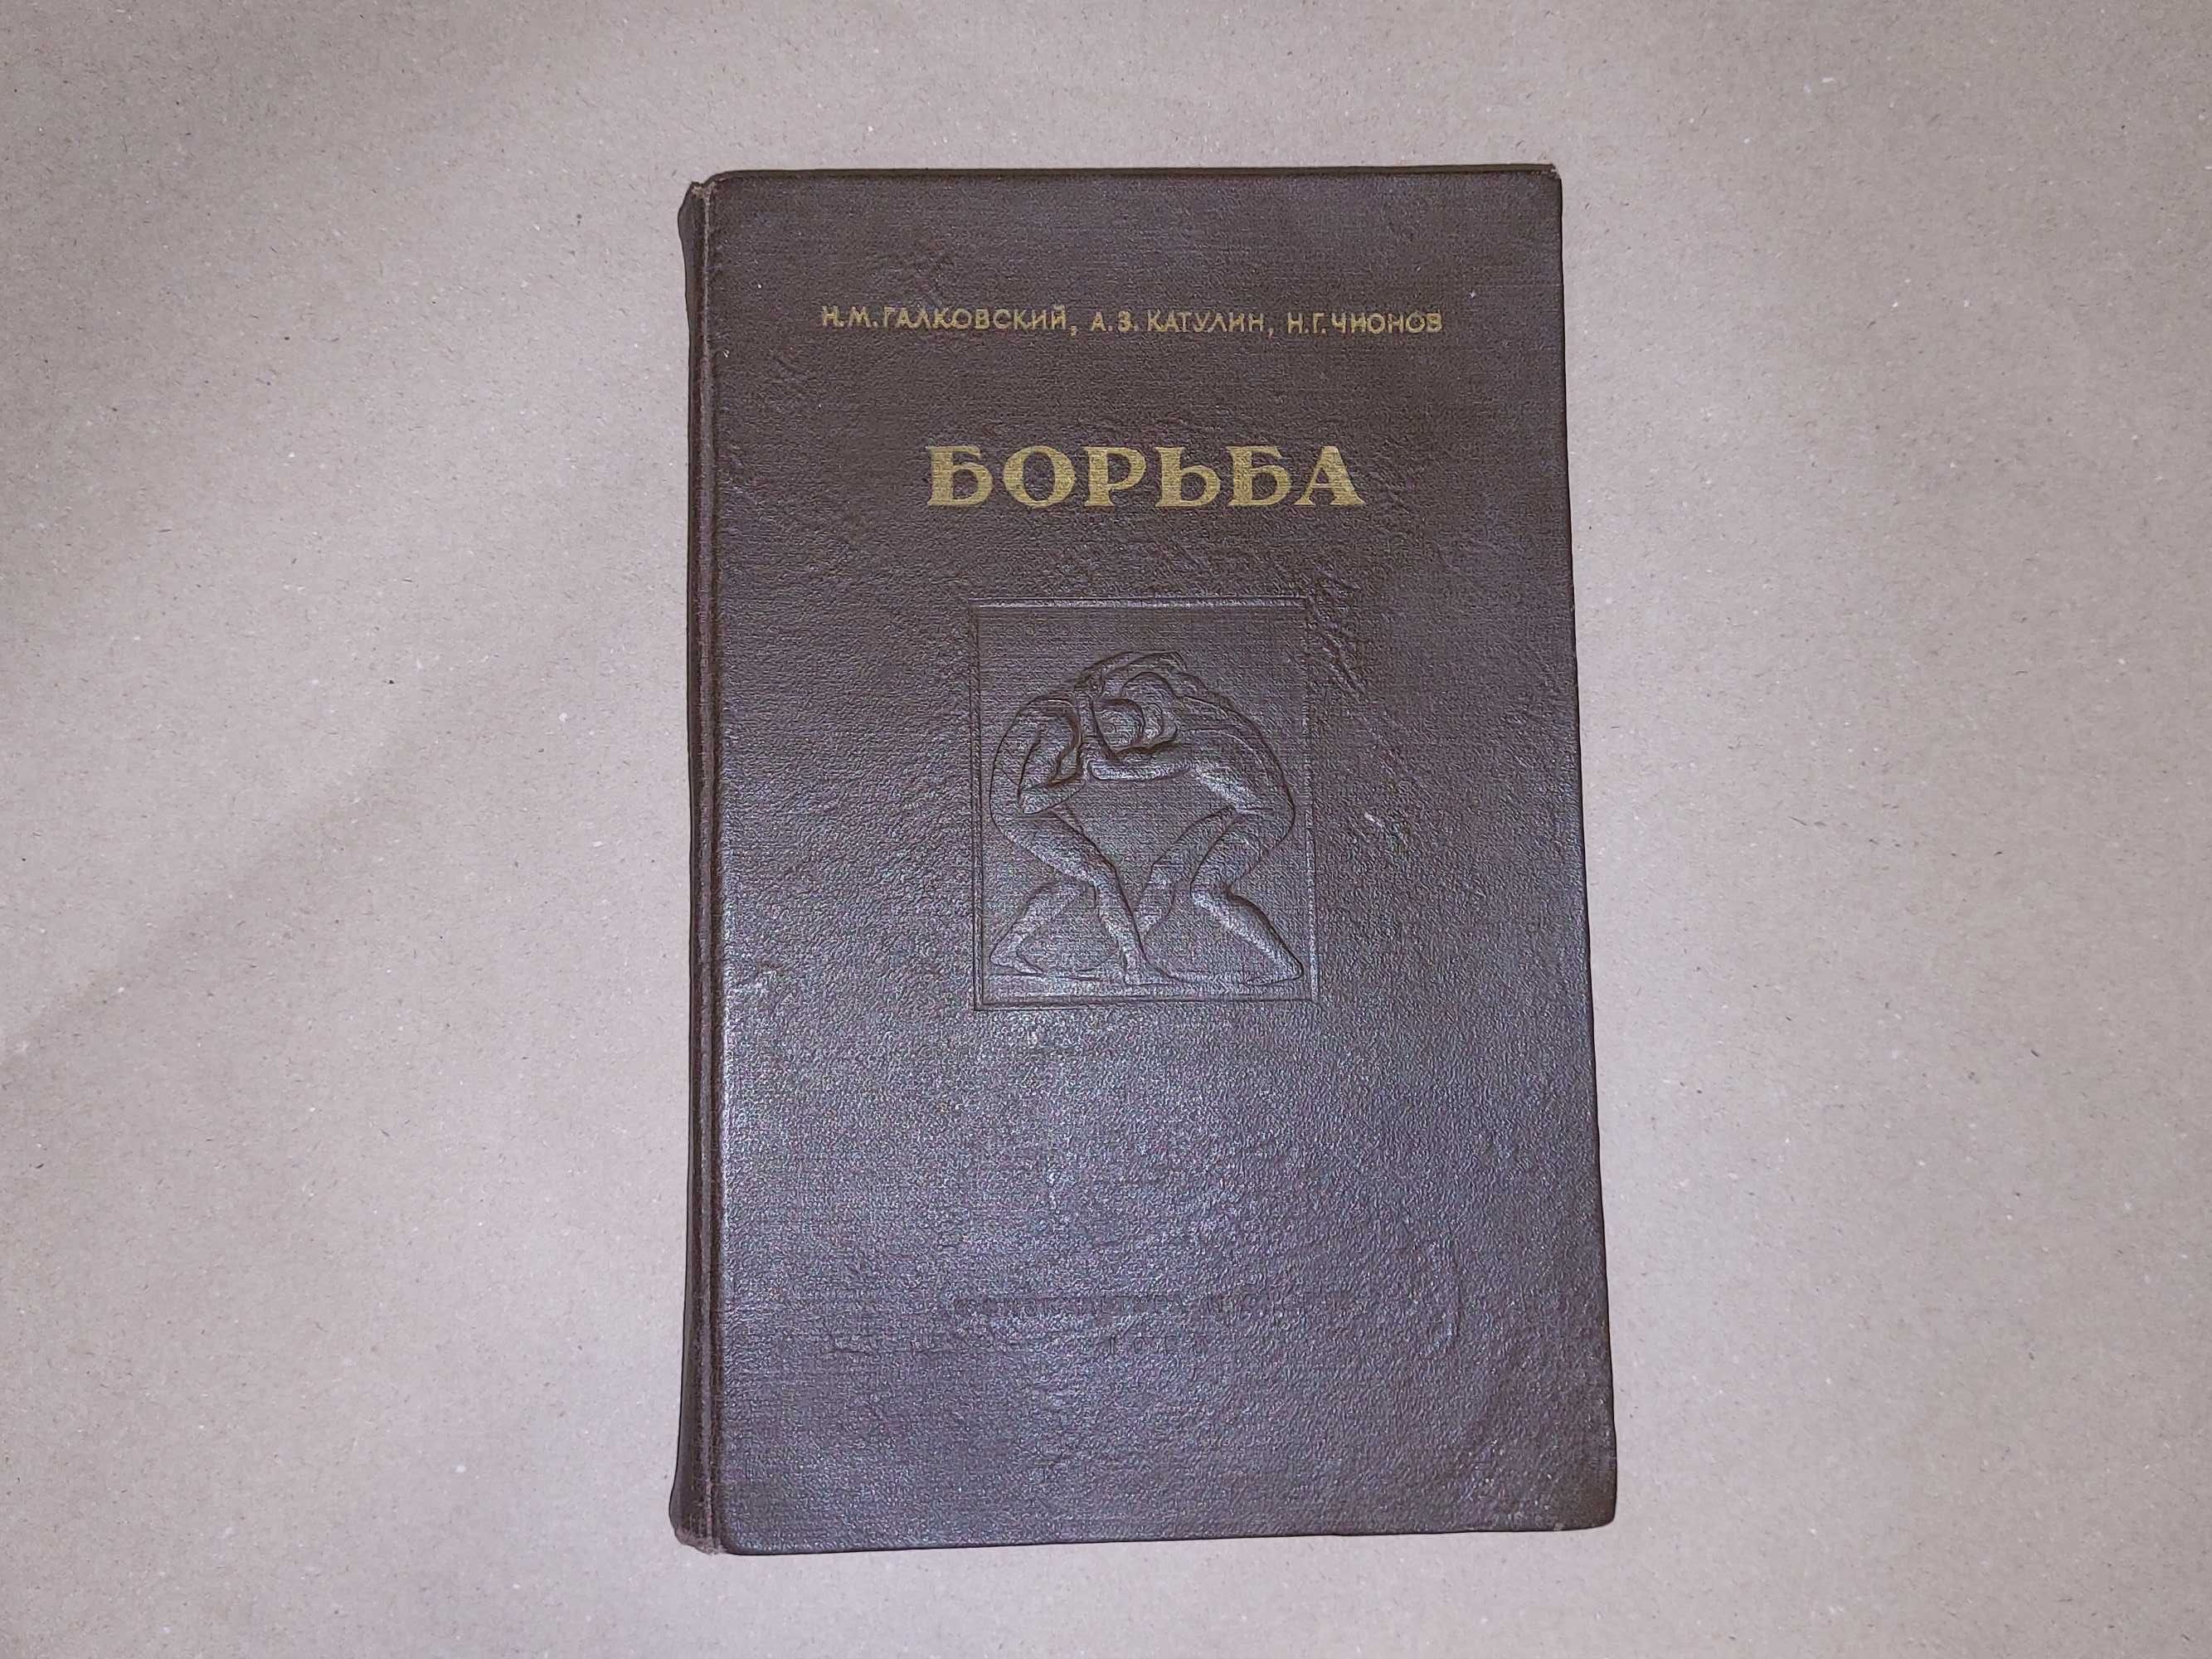 Книга "Карате-до" (1990 г.), "Борьба классическая и вольная" (1952 г).